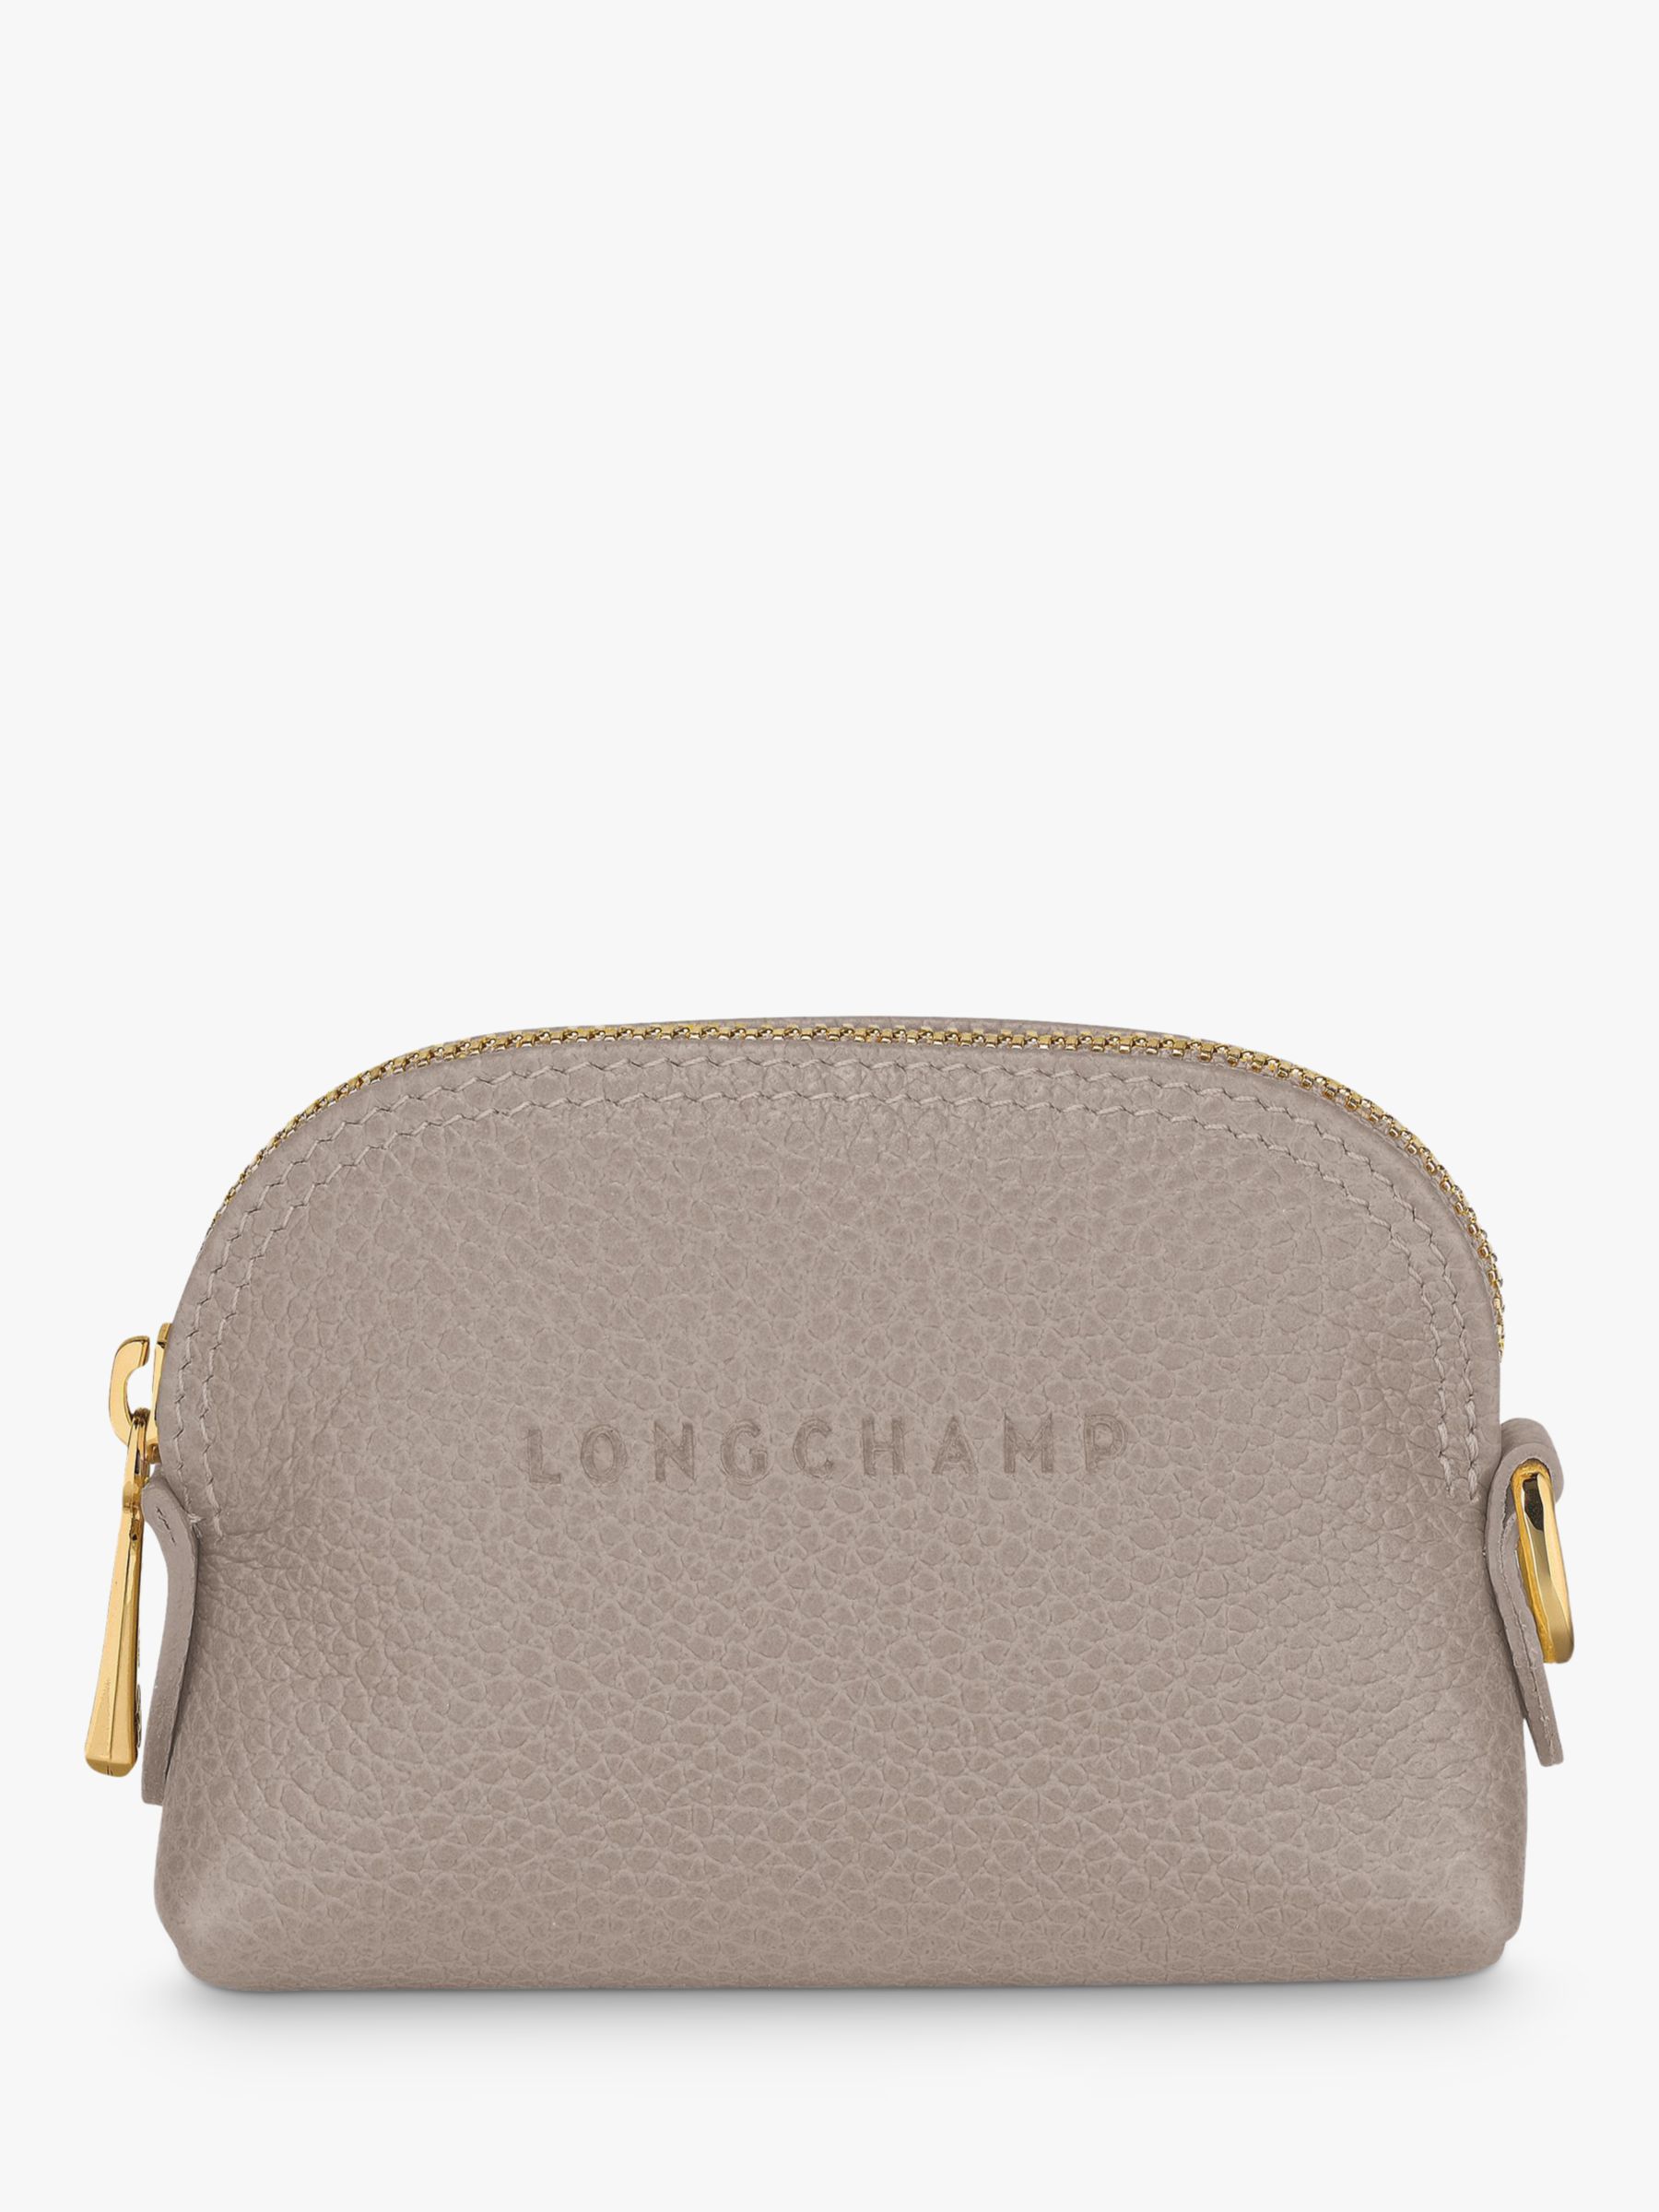 Buy Longchamp Le Foulonné Leather Coin Purse Online at johnlewis.com